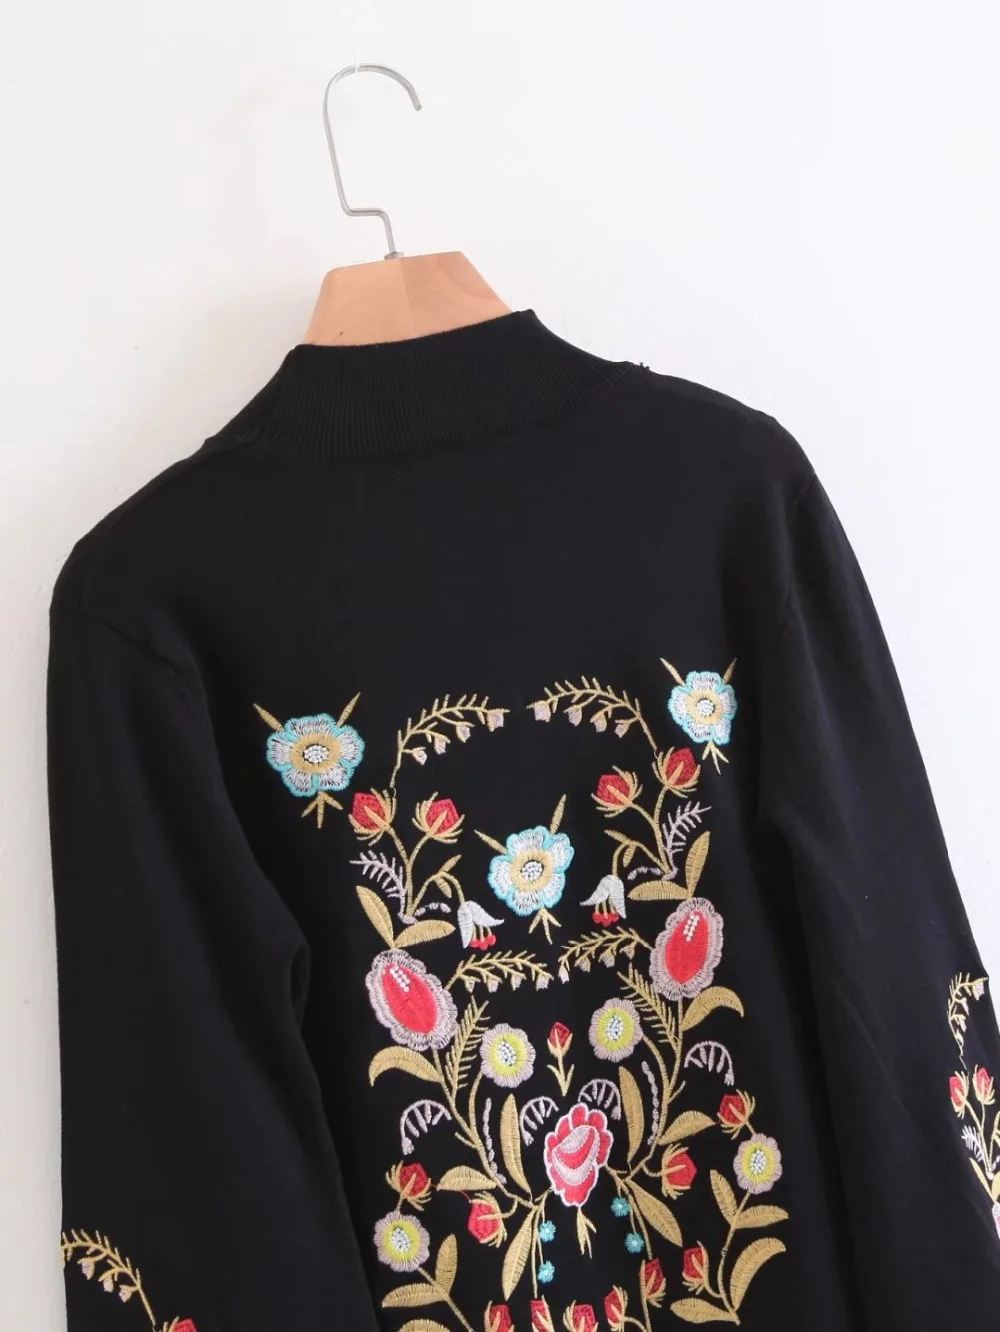 LTD119057 пуловер свитер Женский вязаный свитер Дамская Цветочная вышивка с расклешенными рукавами бандажный женский элегантный свитер